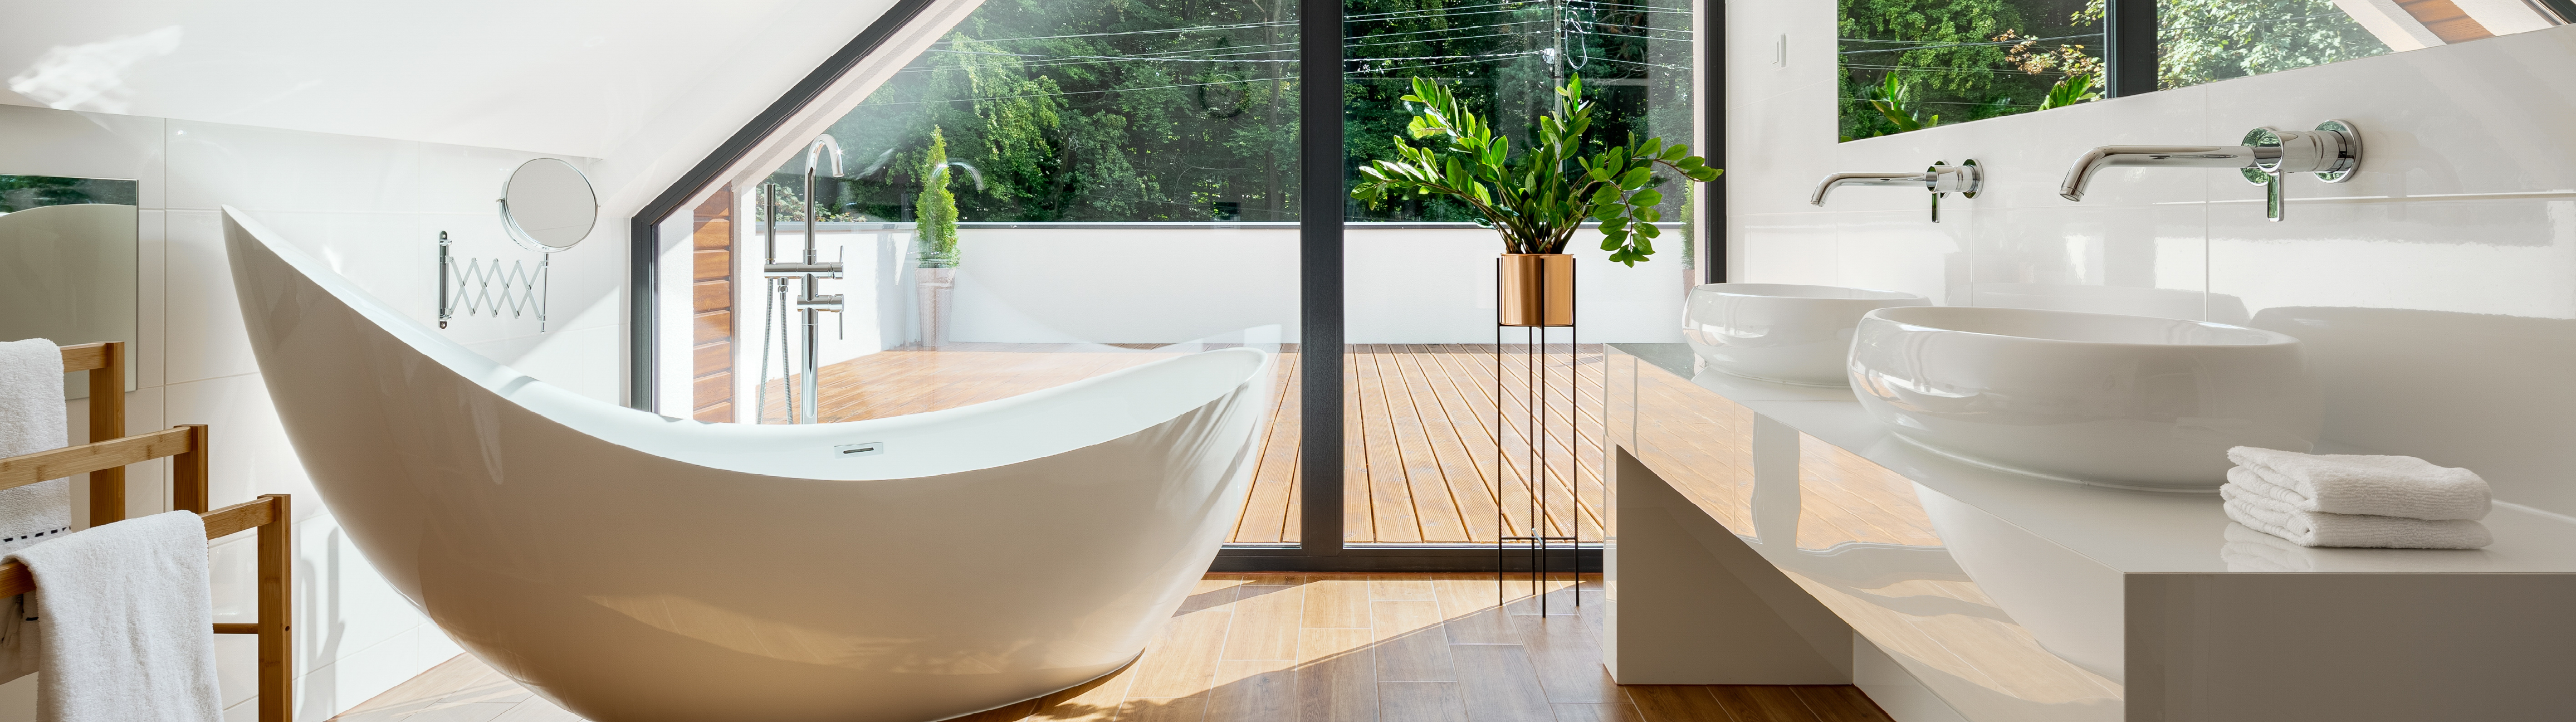 Comment créer une ambiance zen et relaxante dans votre salle de bain